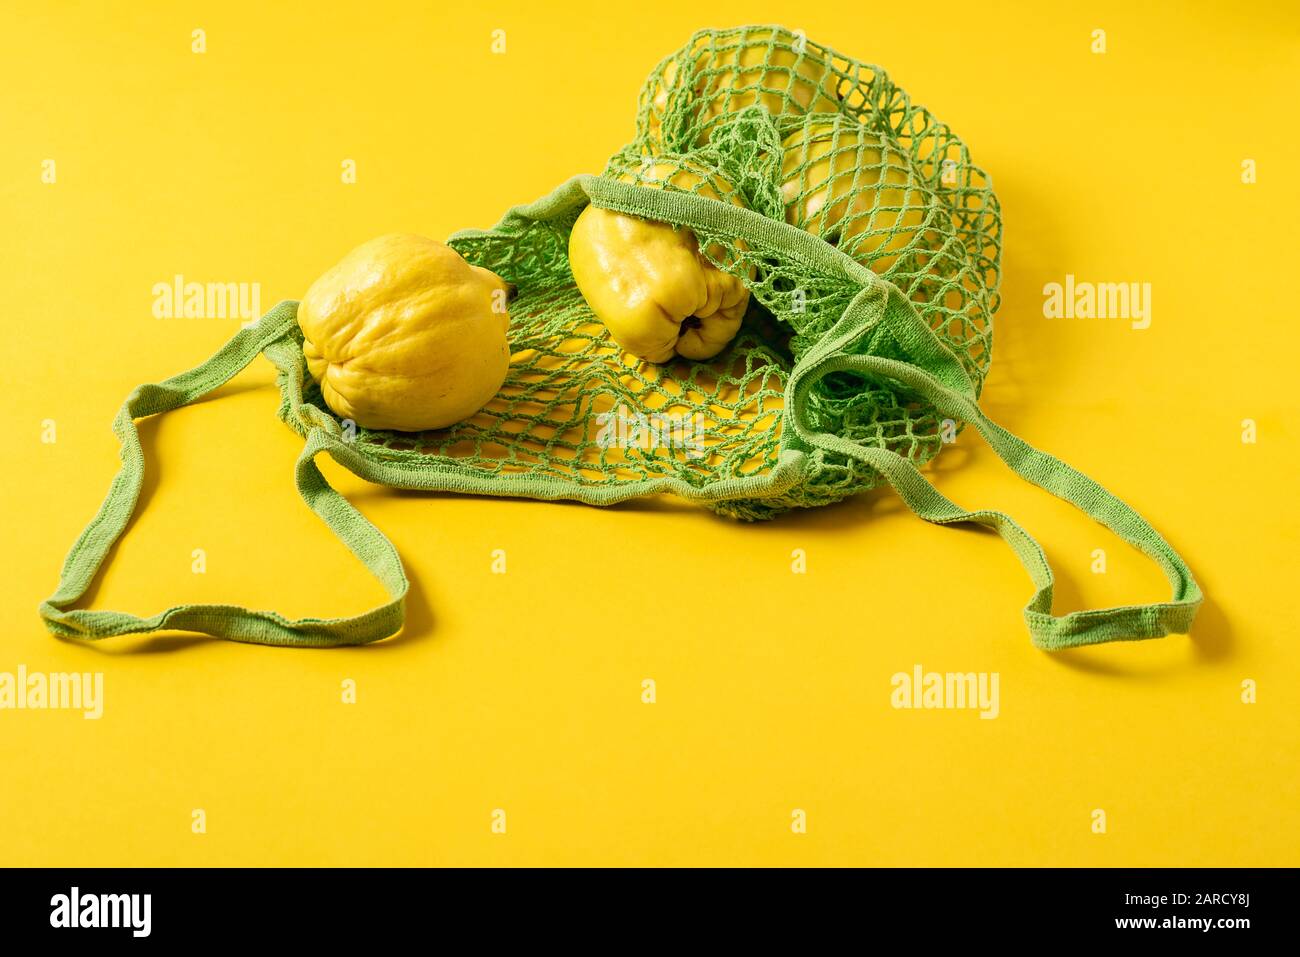 Frutta fresca di mele cotogne in un sacchetto di tessuto netto su fondo giallo. Borsa per lo shopping ecologica e frutta. Sacchetto riutilizzabile per alimentari. Ridurre l'inquinamento della plastica. Foto Stock